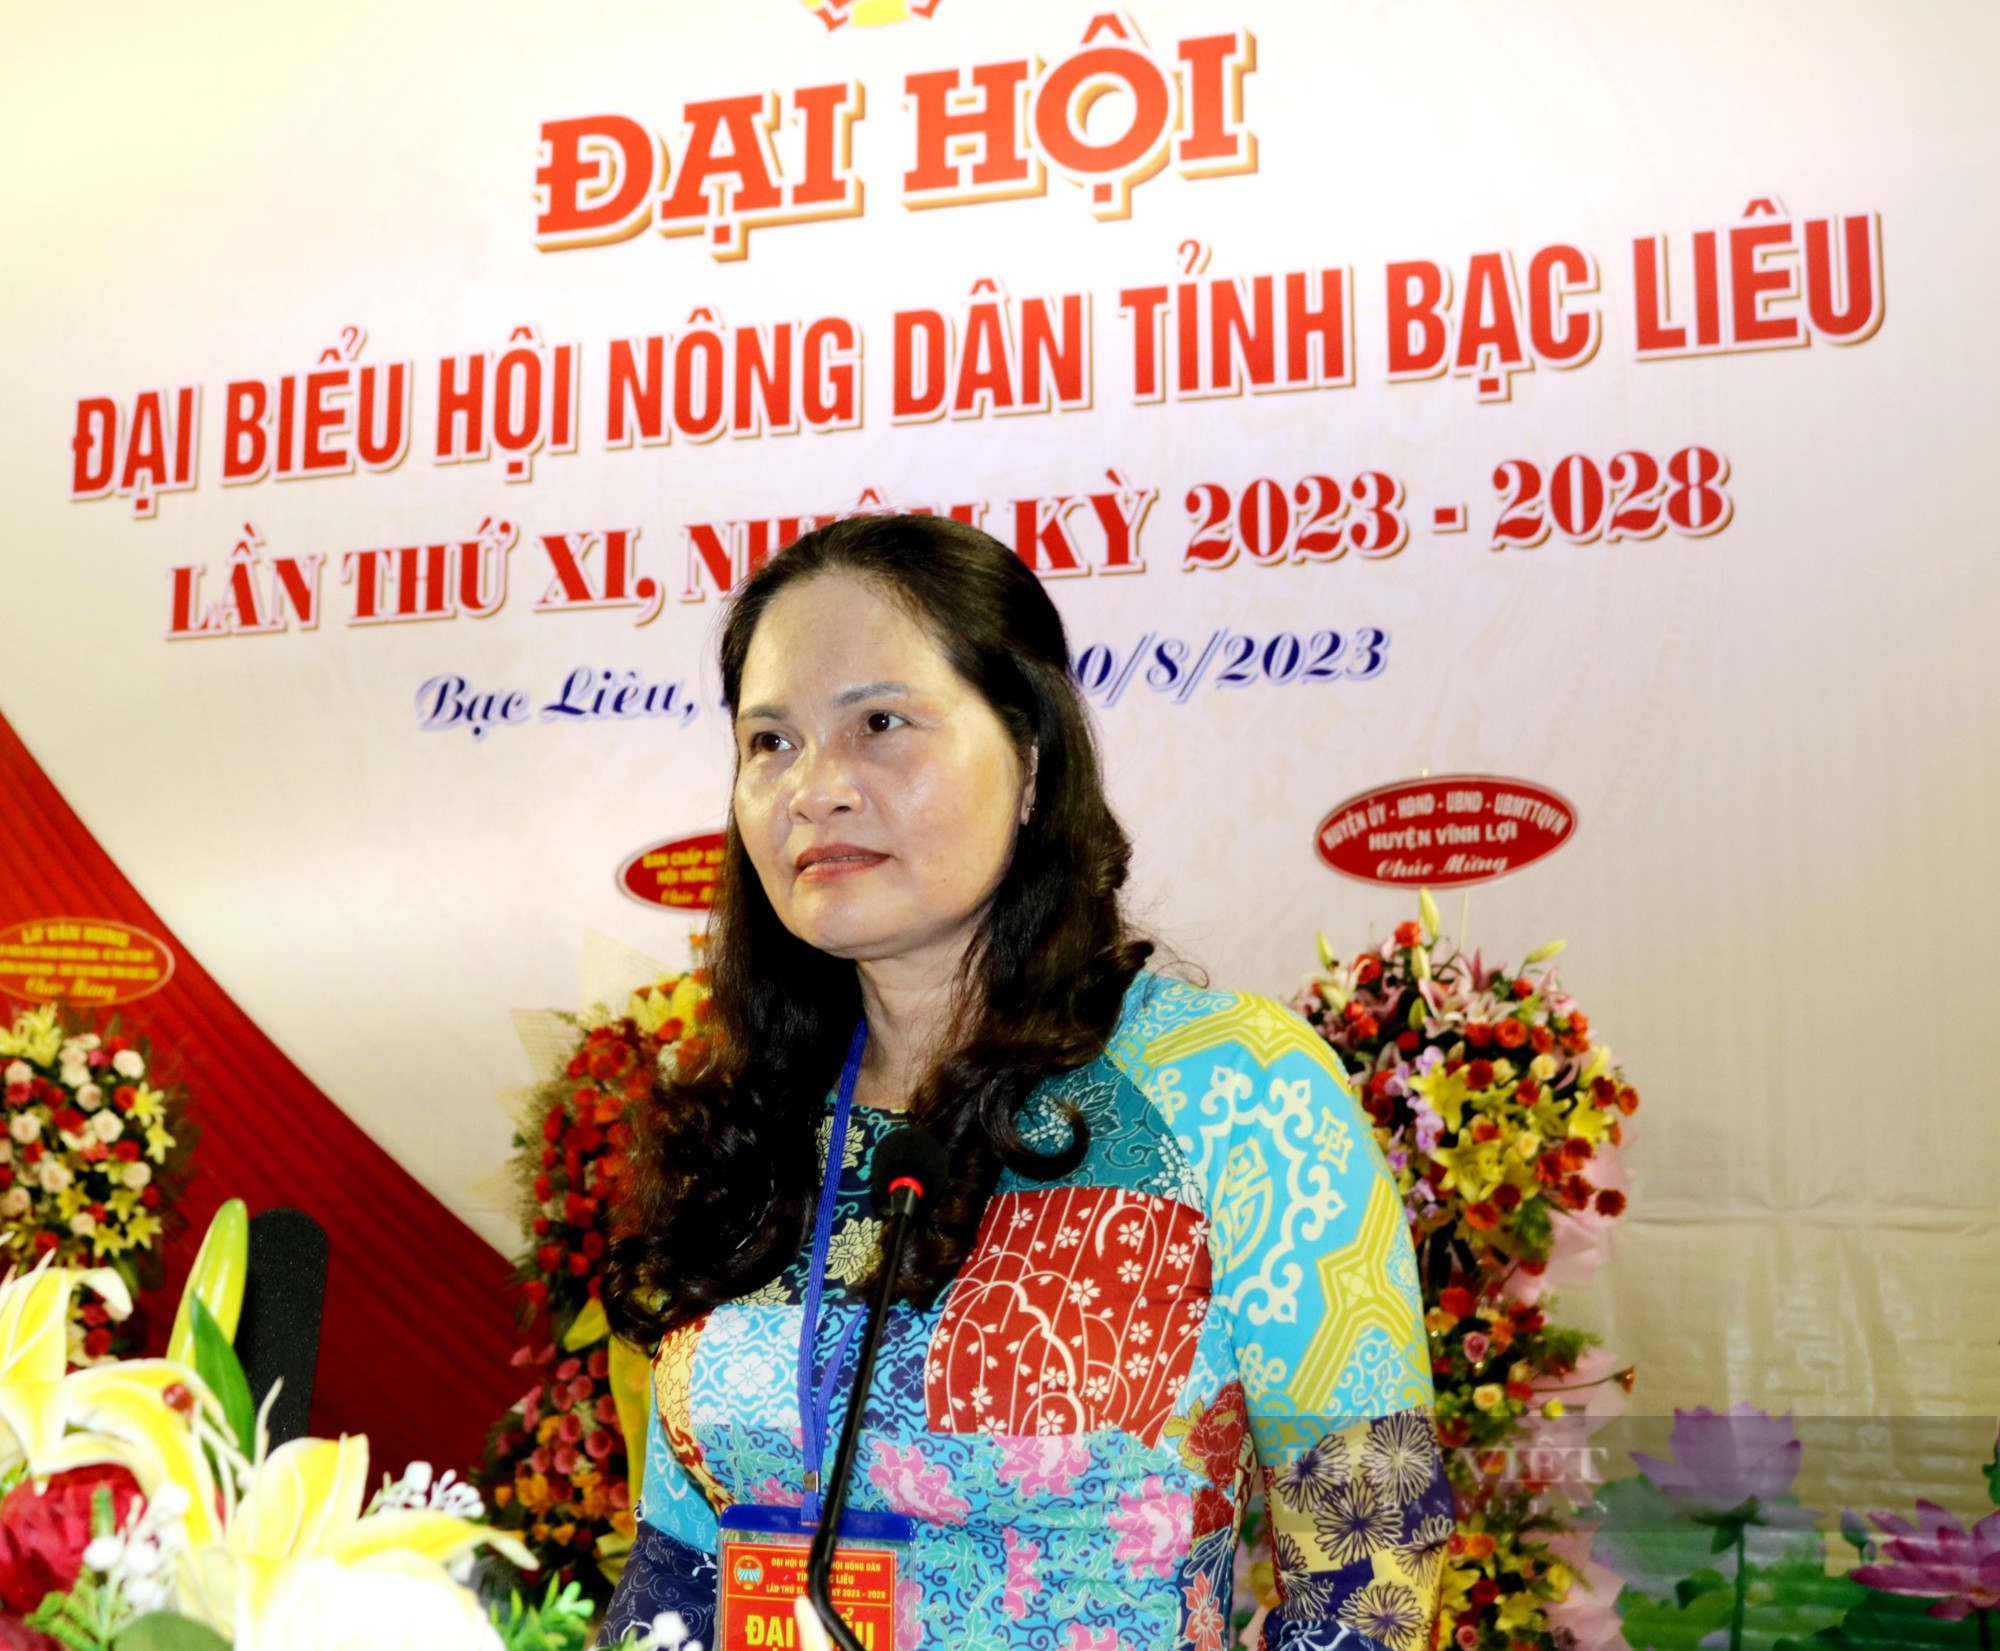 Phiên trù bị Đại hội đại biểu Hội Nông dân tỉnh Bạc Liêu: Đóng góp sôi nổi các chỉ tiêu nhiệm kỳ 2023 - 2028 - Ảnh 2.